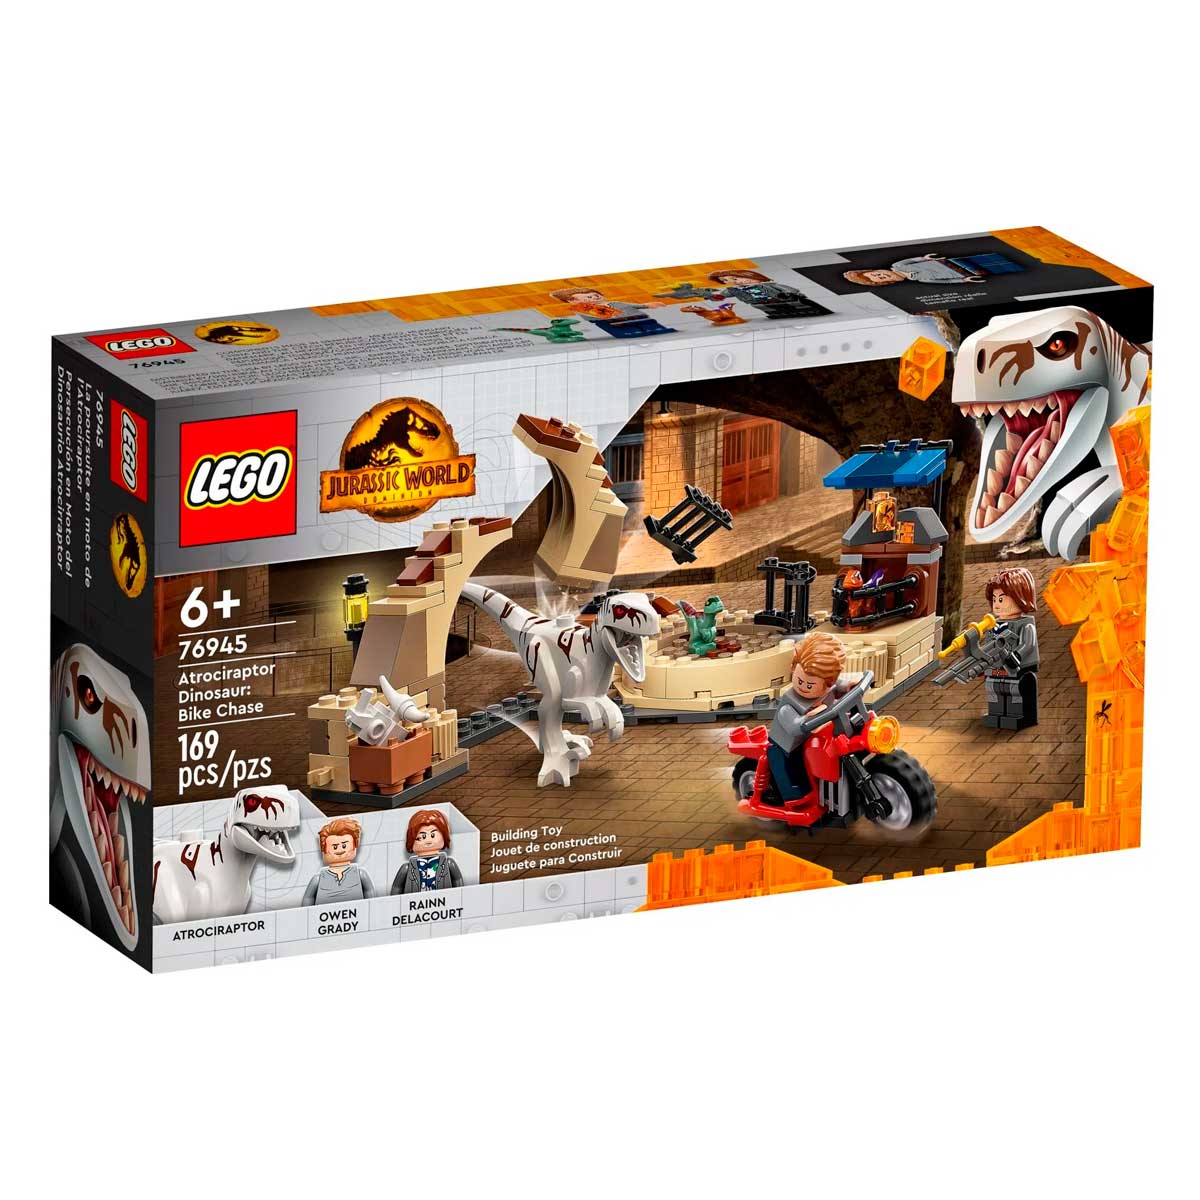 LEGO Jurassic World - Dinossauro Atrociraptor: Perseguição de Motocicleta - 76945